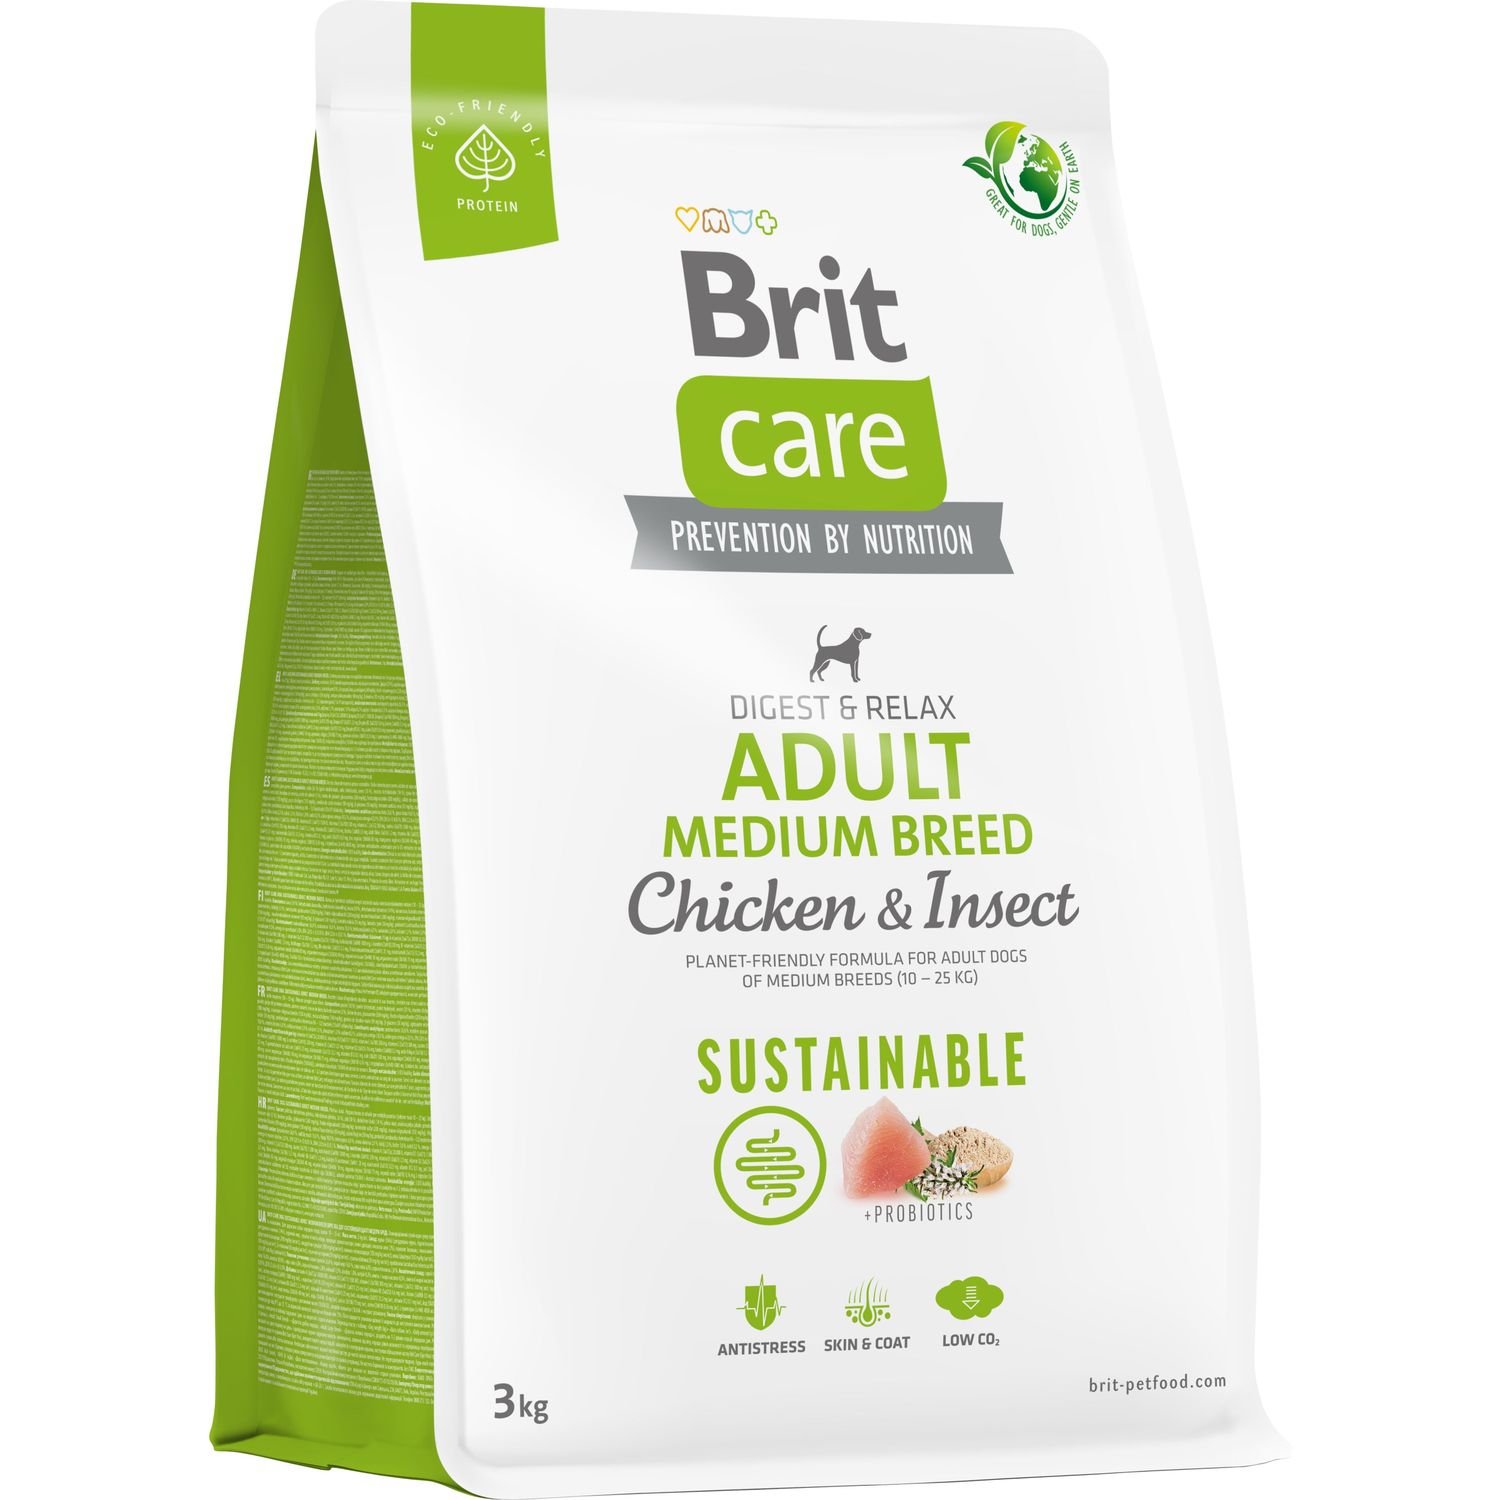 Сухой корм для собак средних пород Brit Care Dog Sustainable Adult Medium Breed, с курицей и насекомыми, 3 кг - фото 1